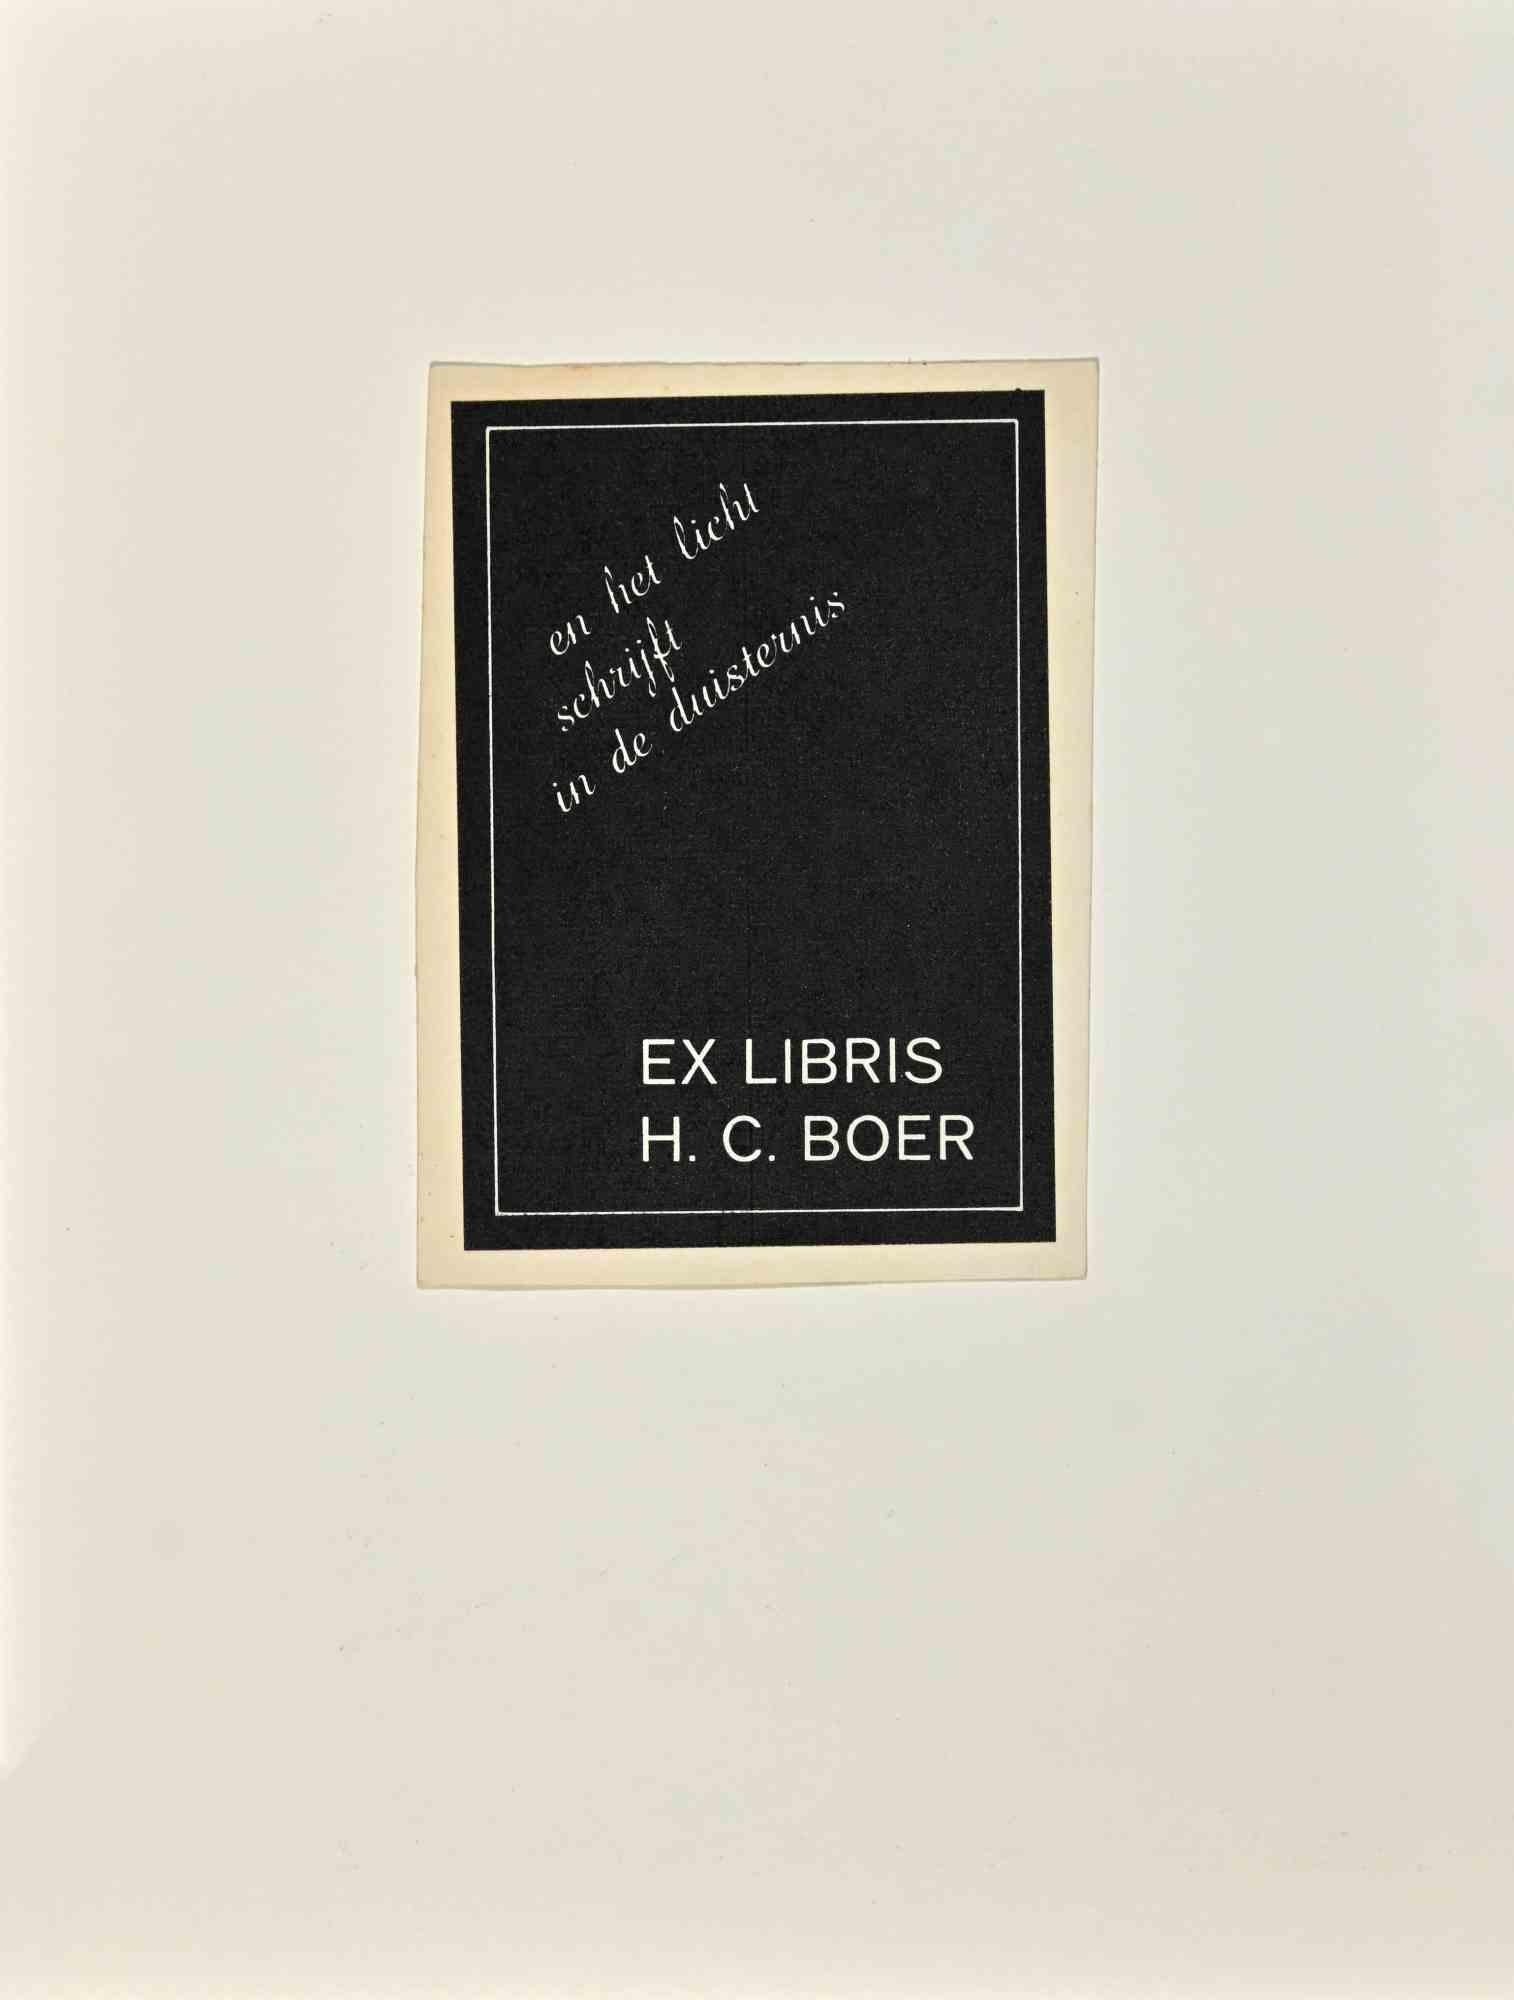  Ex Libris – H. C. Boer – Holzschnitt – 1950er Jahre